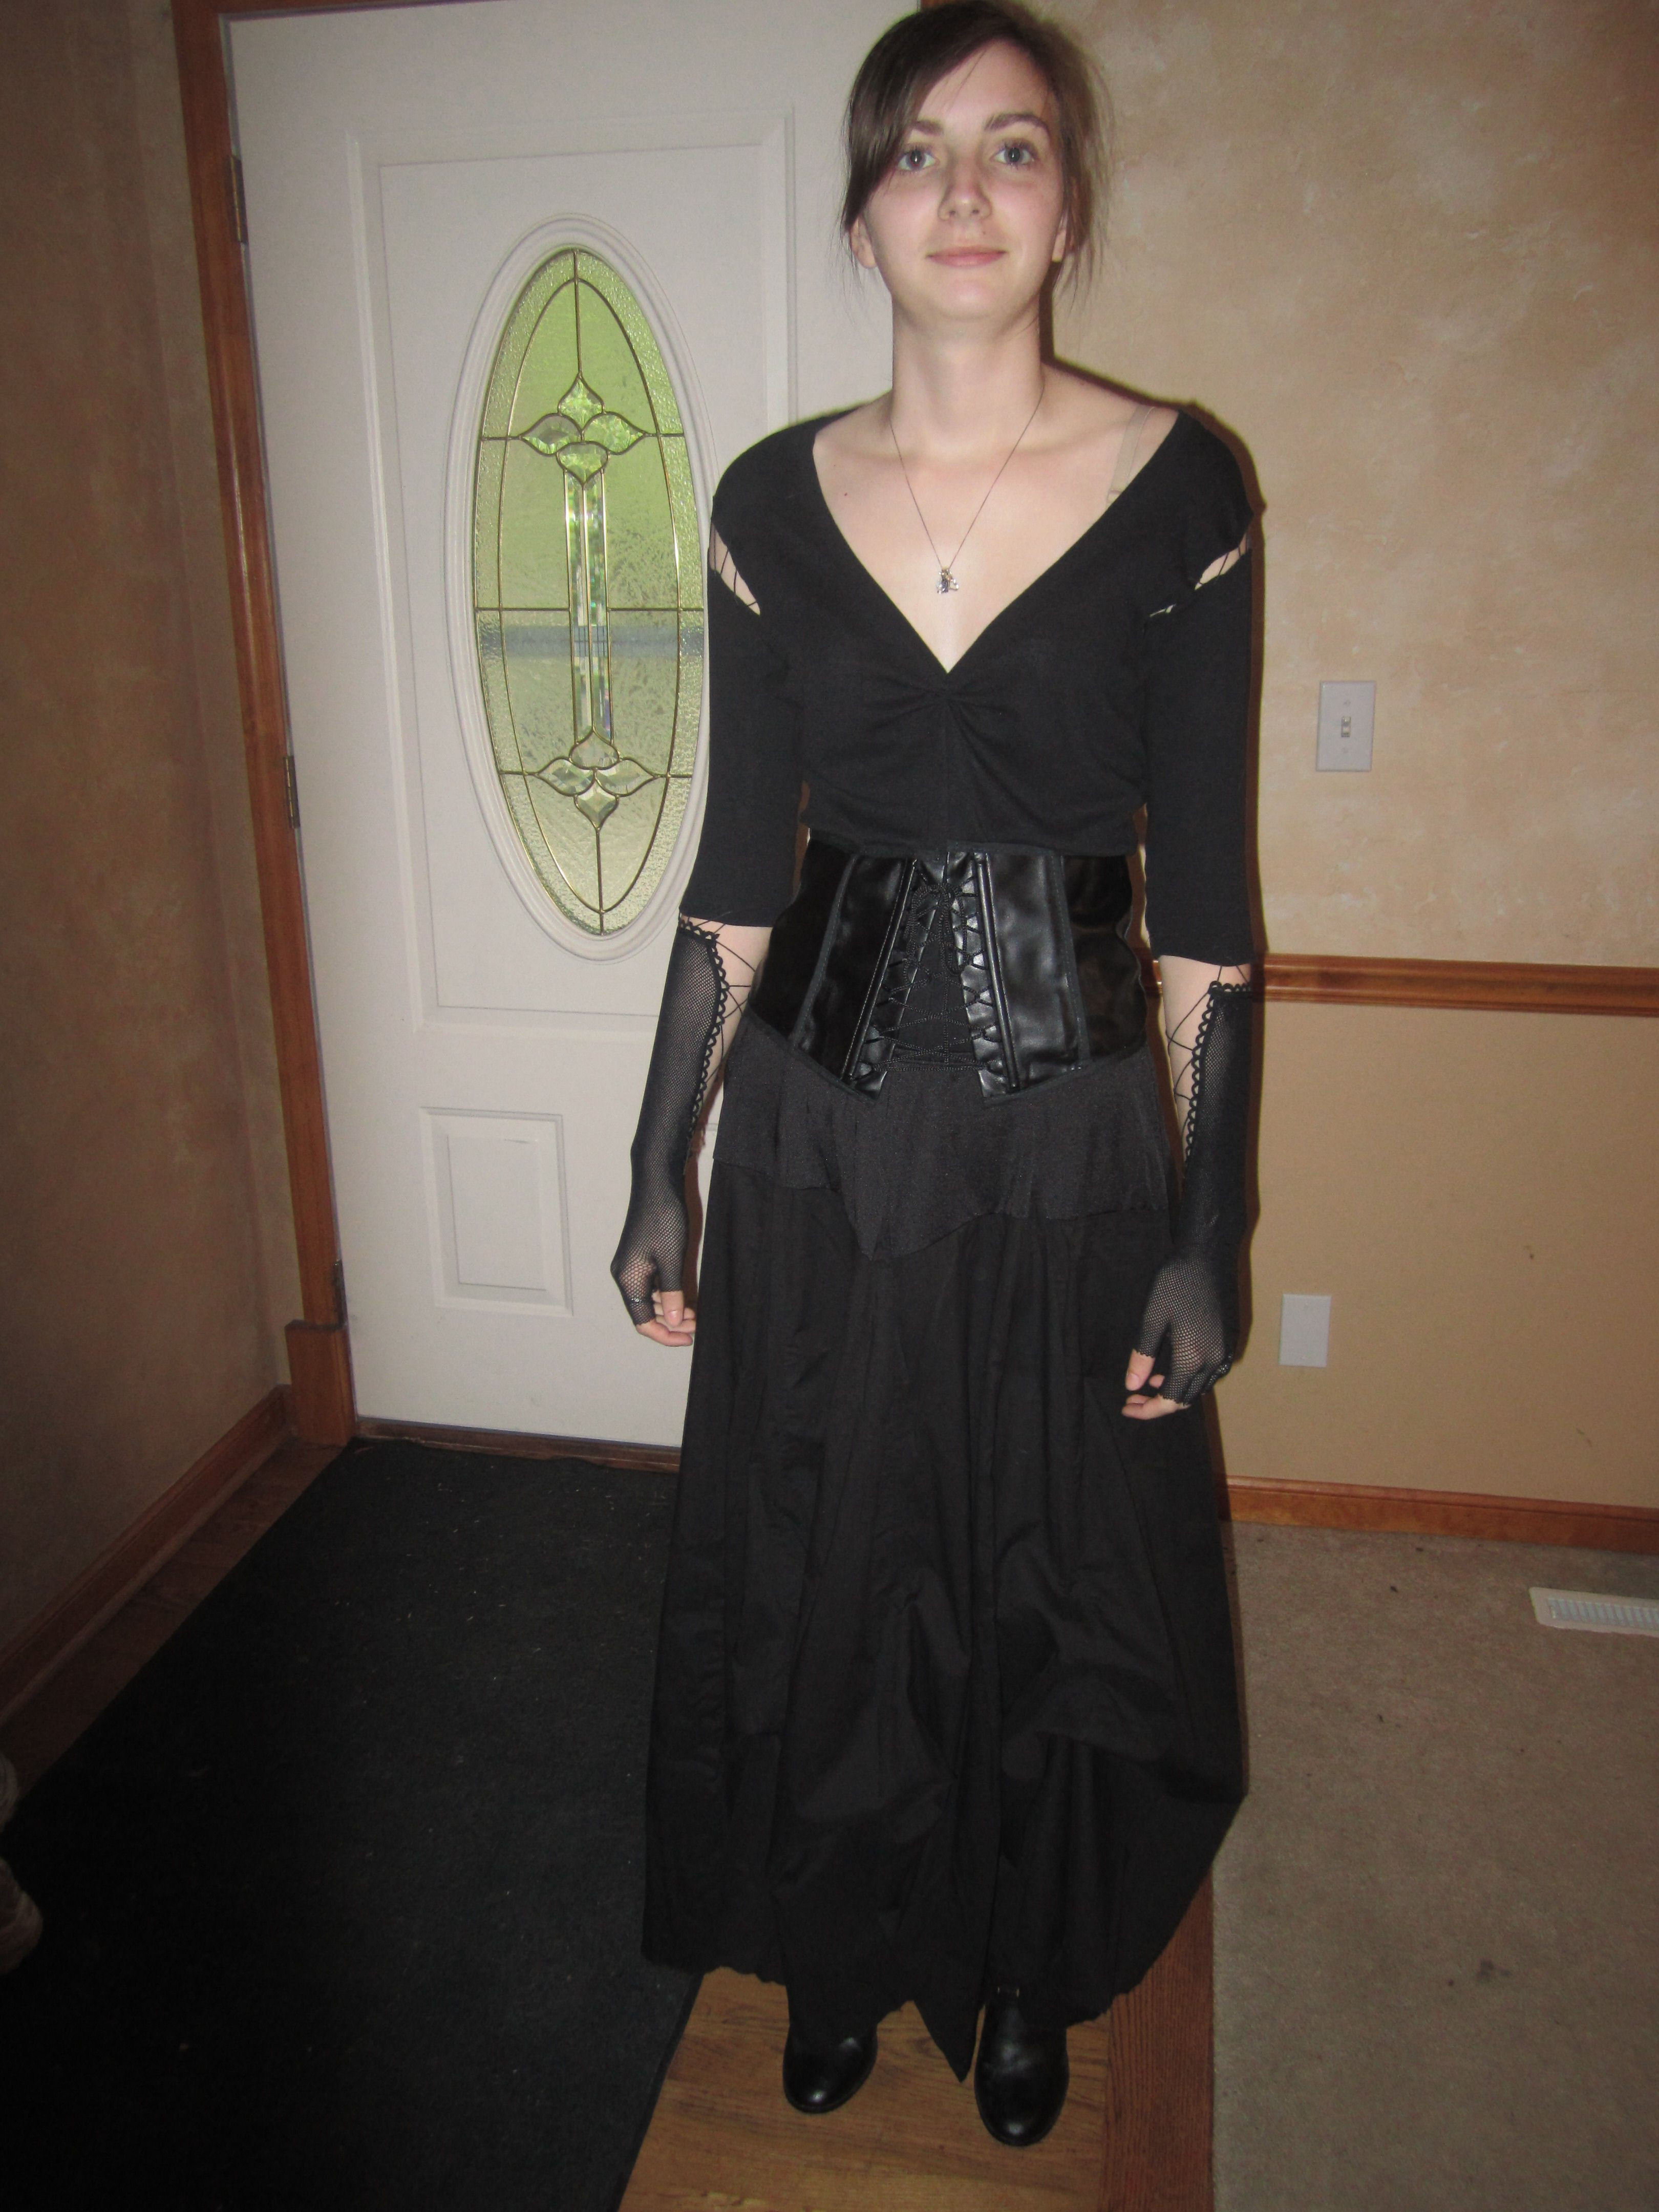 Best ideas about Bellatrix Lestrange Costume DIY
. Save or Pin Bellatrix Lastrange DIY Costumes Now.